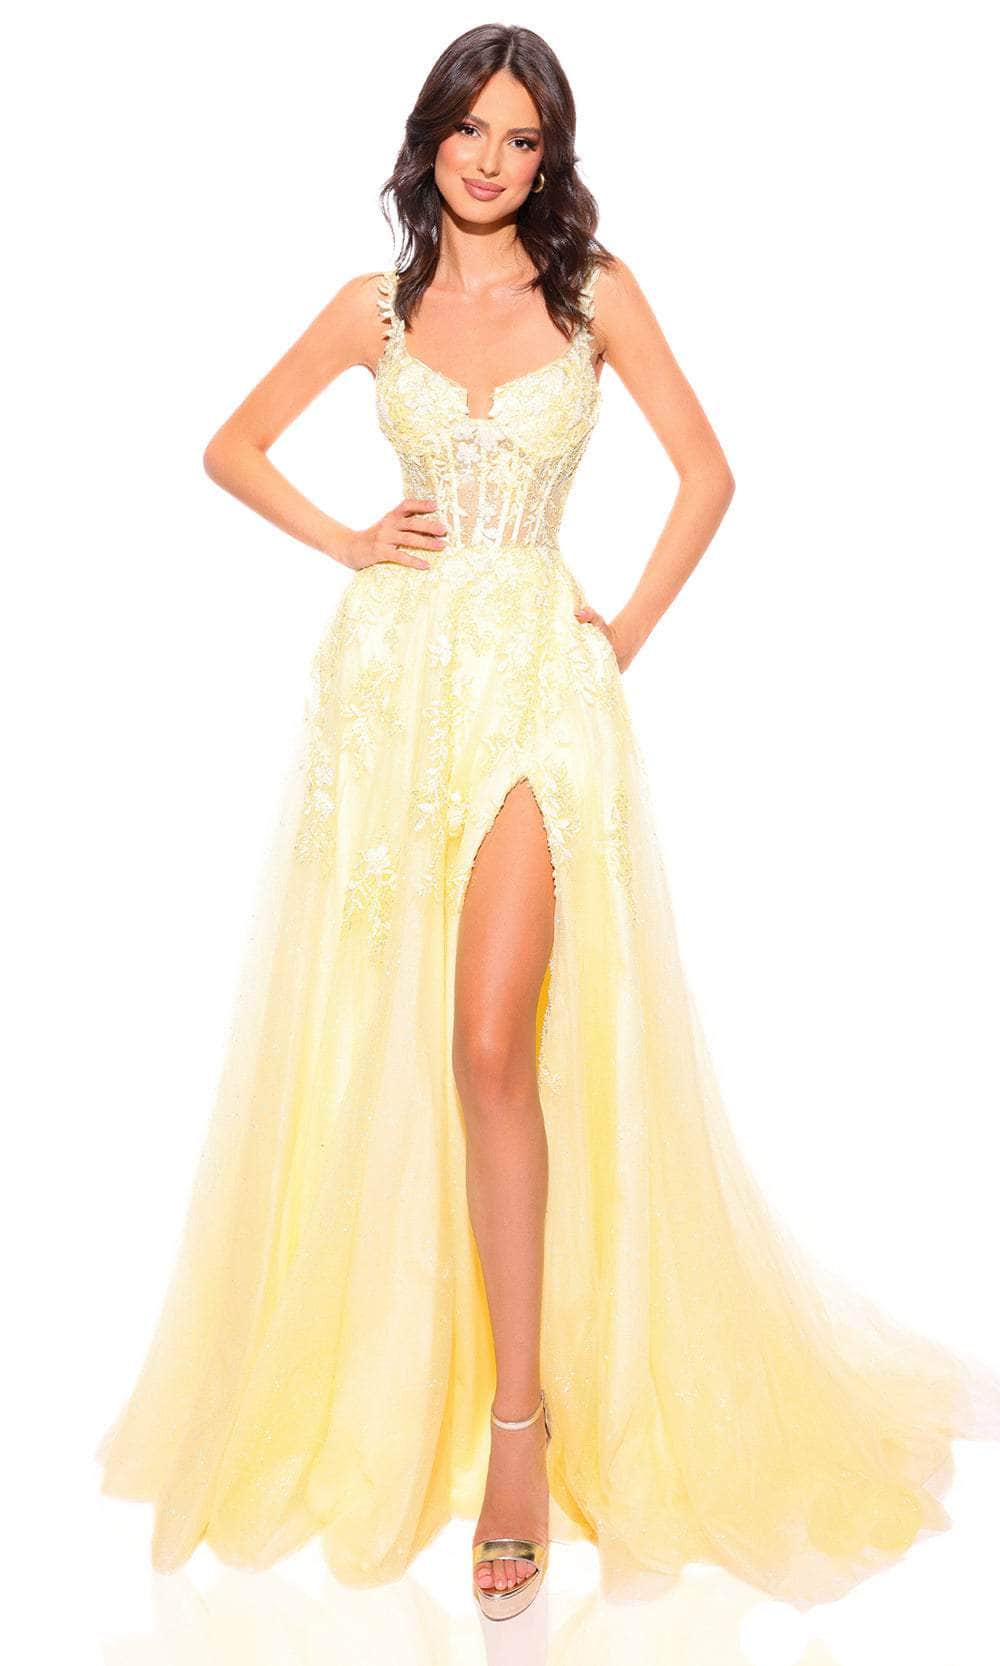 Amarra 88849 - Lace Ornate Corset Prom Dress – ADASA